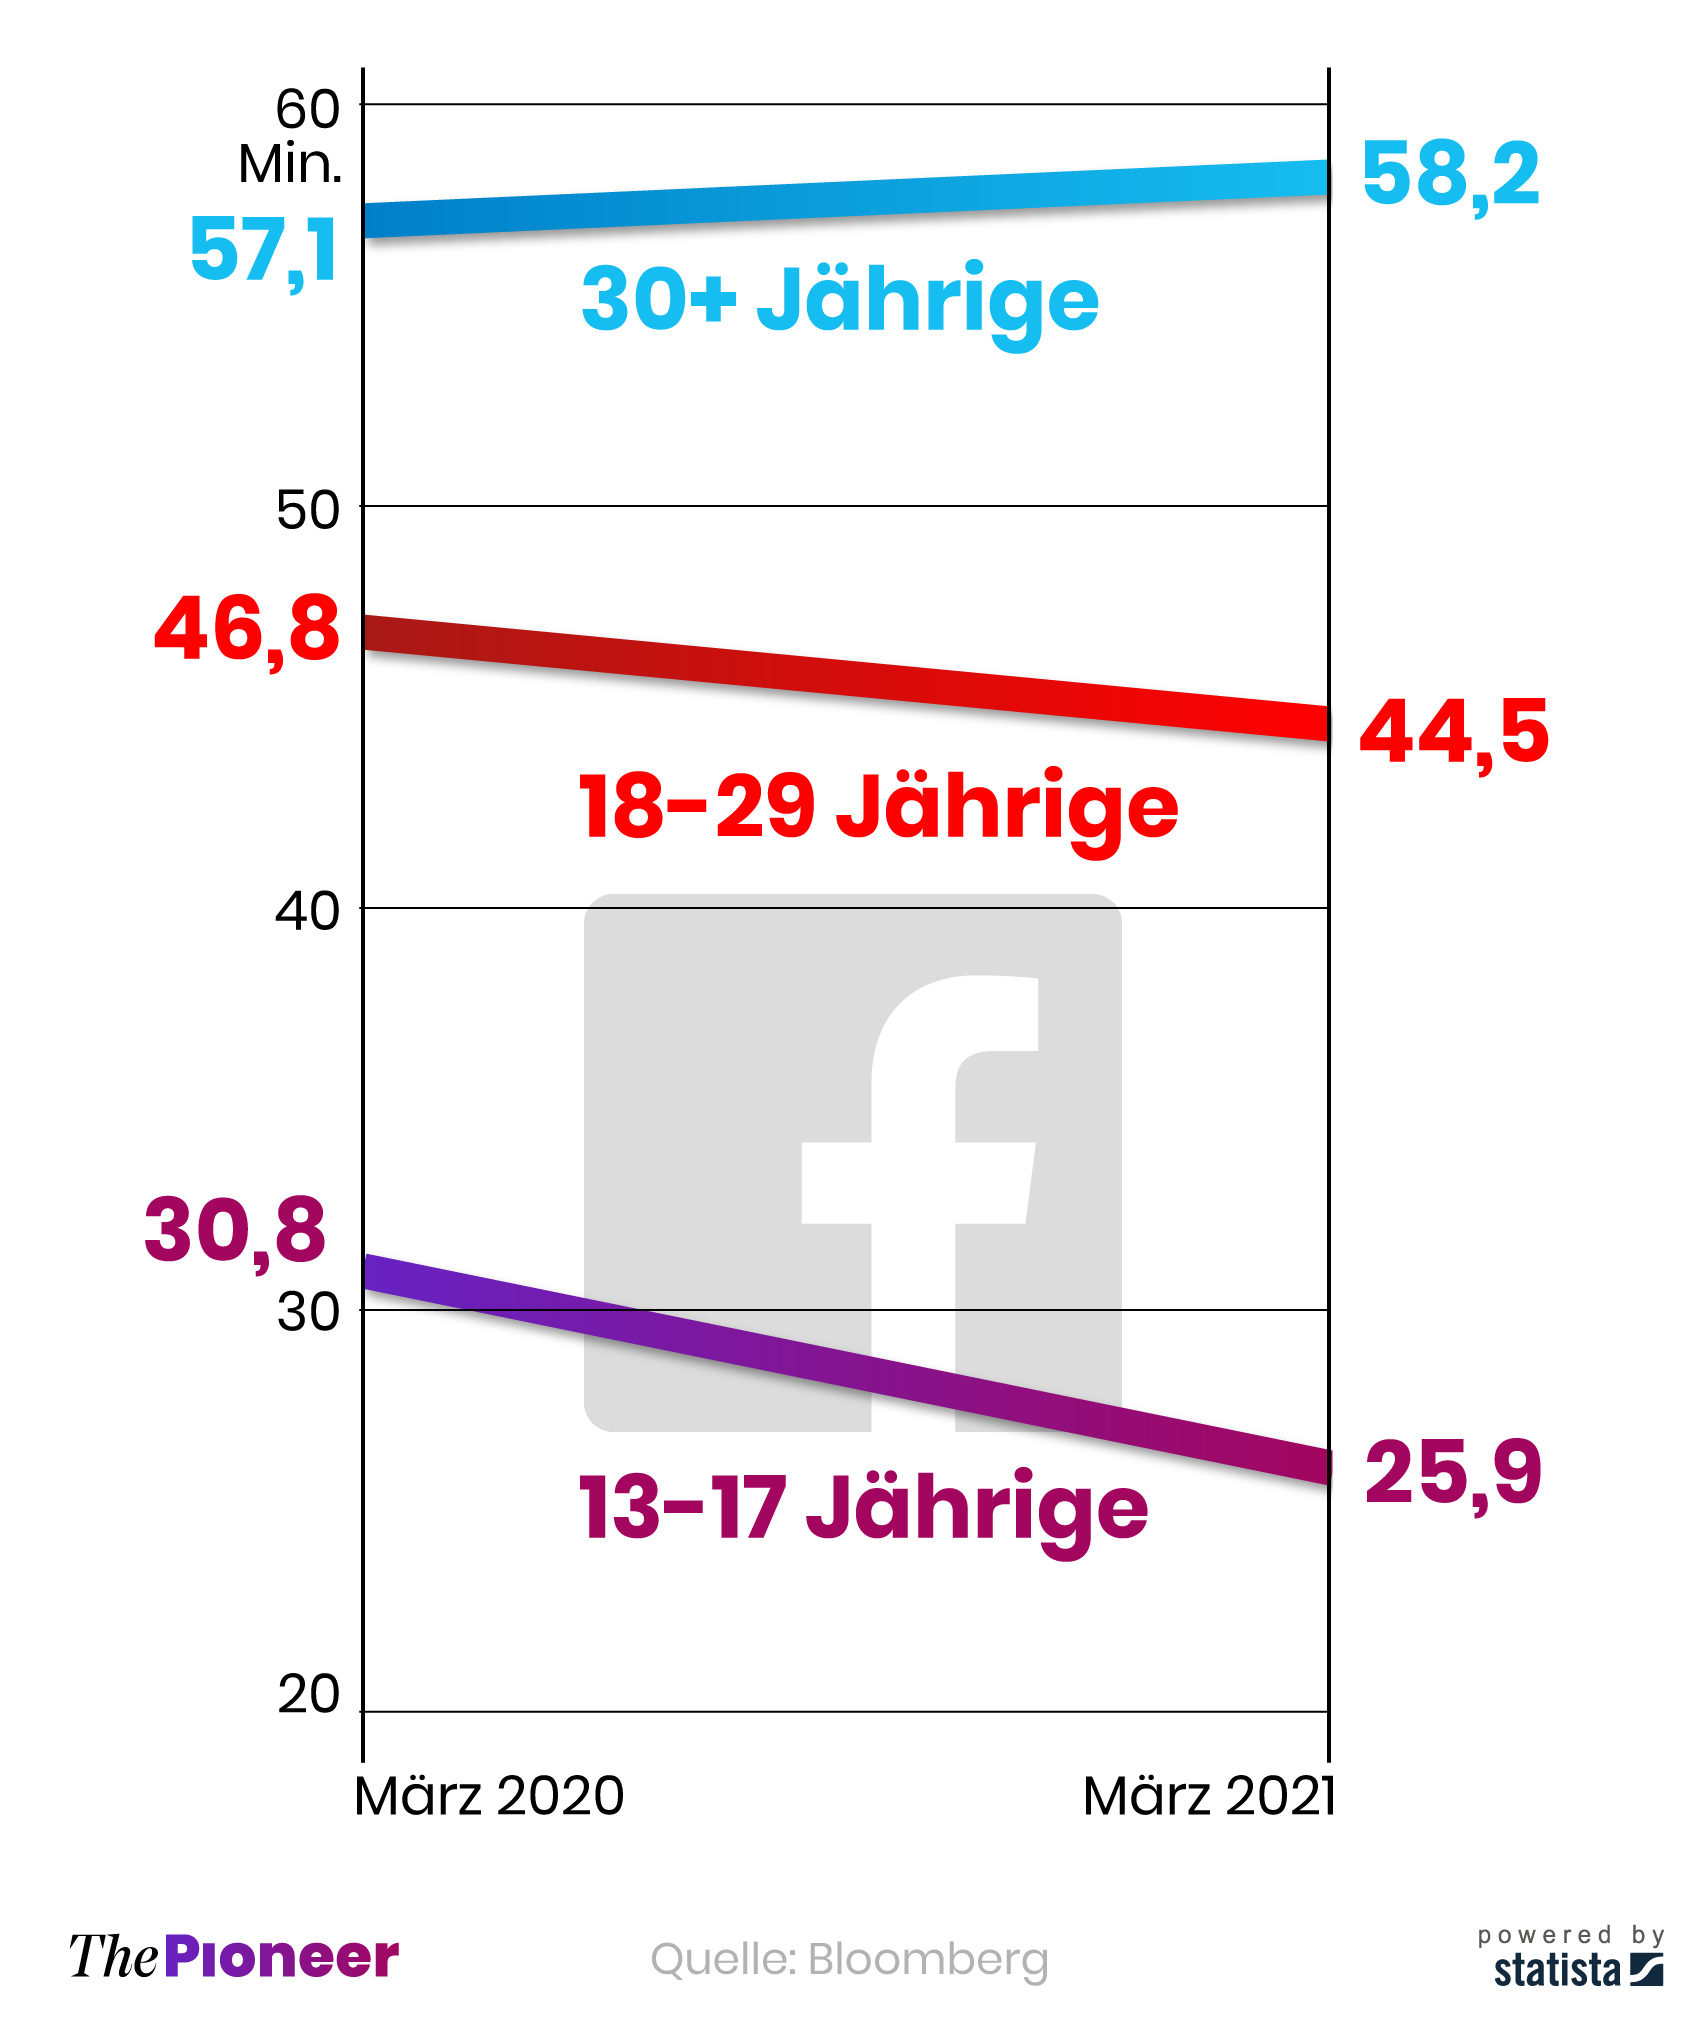  Im Durchschnitt täglich auf Facebook verbrachte Minuten pro aktivem Nutzer, nach Altersgruppen 